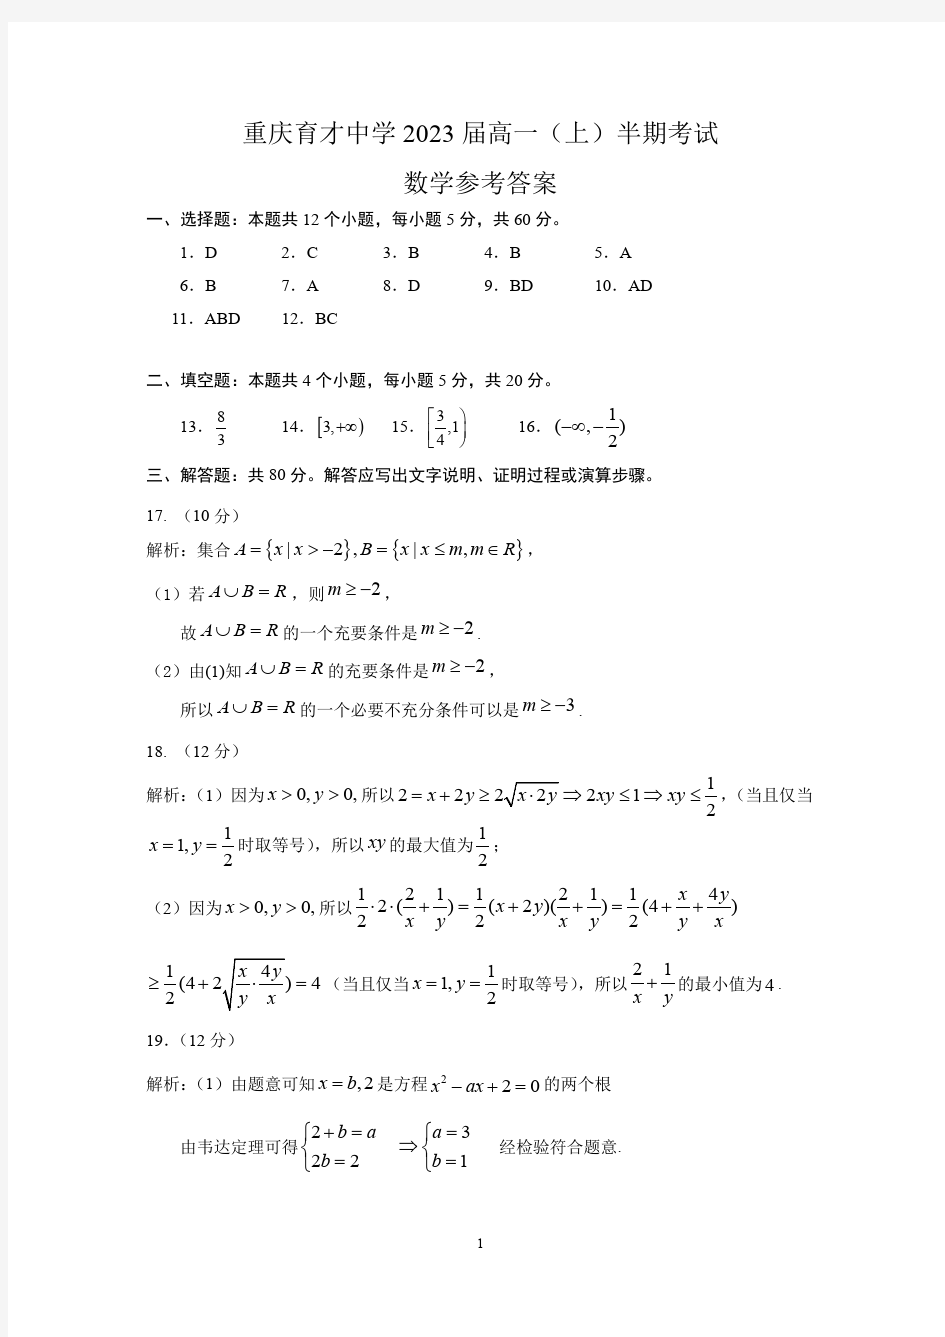 重庆育才中学 2023 届高一(上)半期考试  数学试卷答案